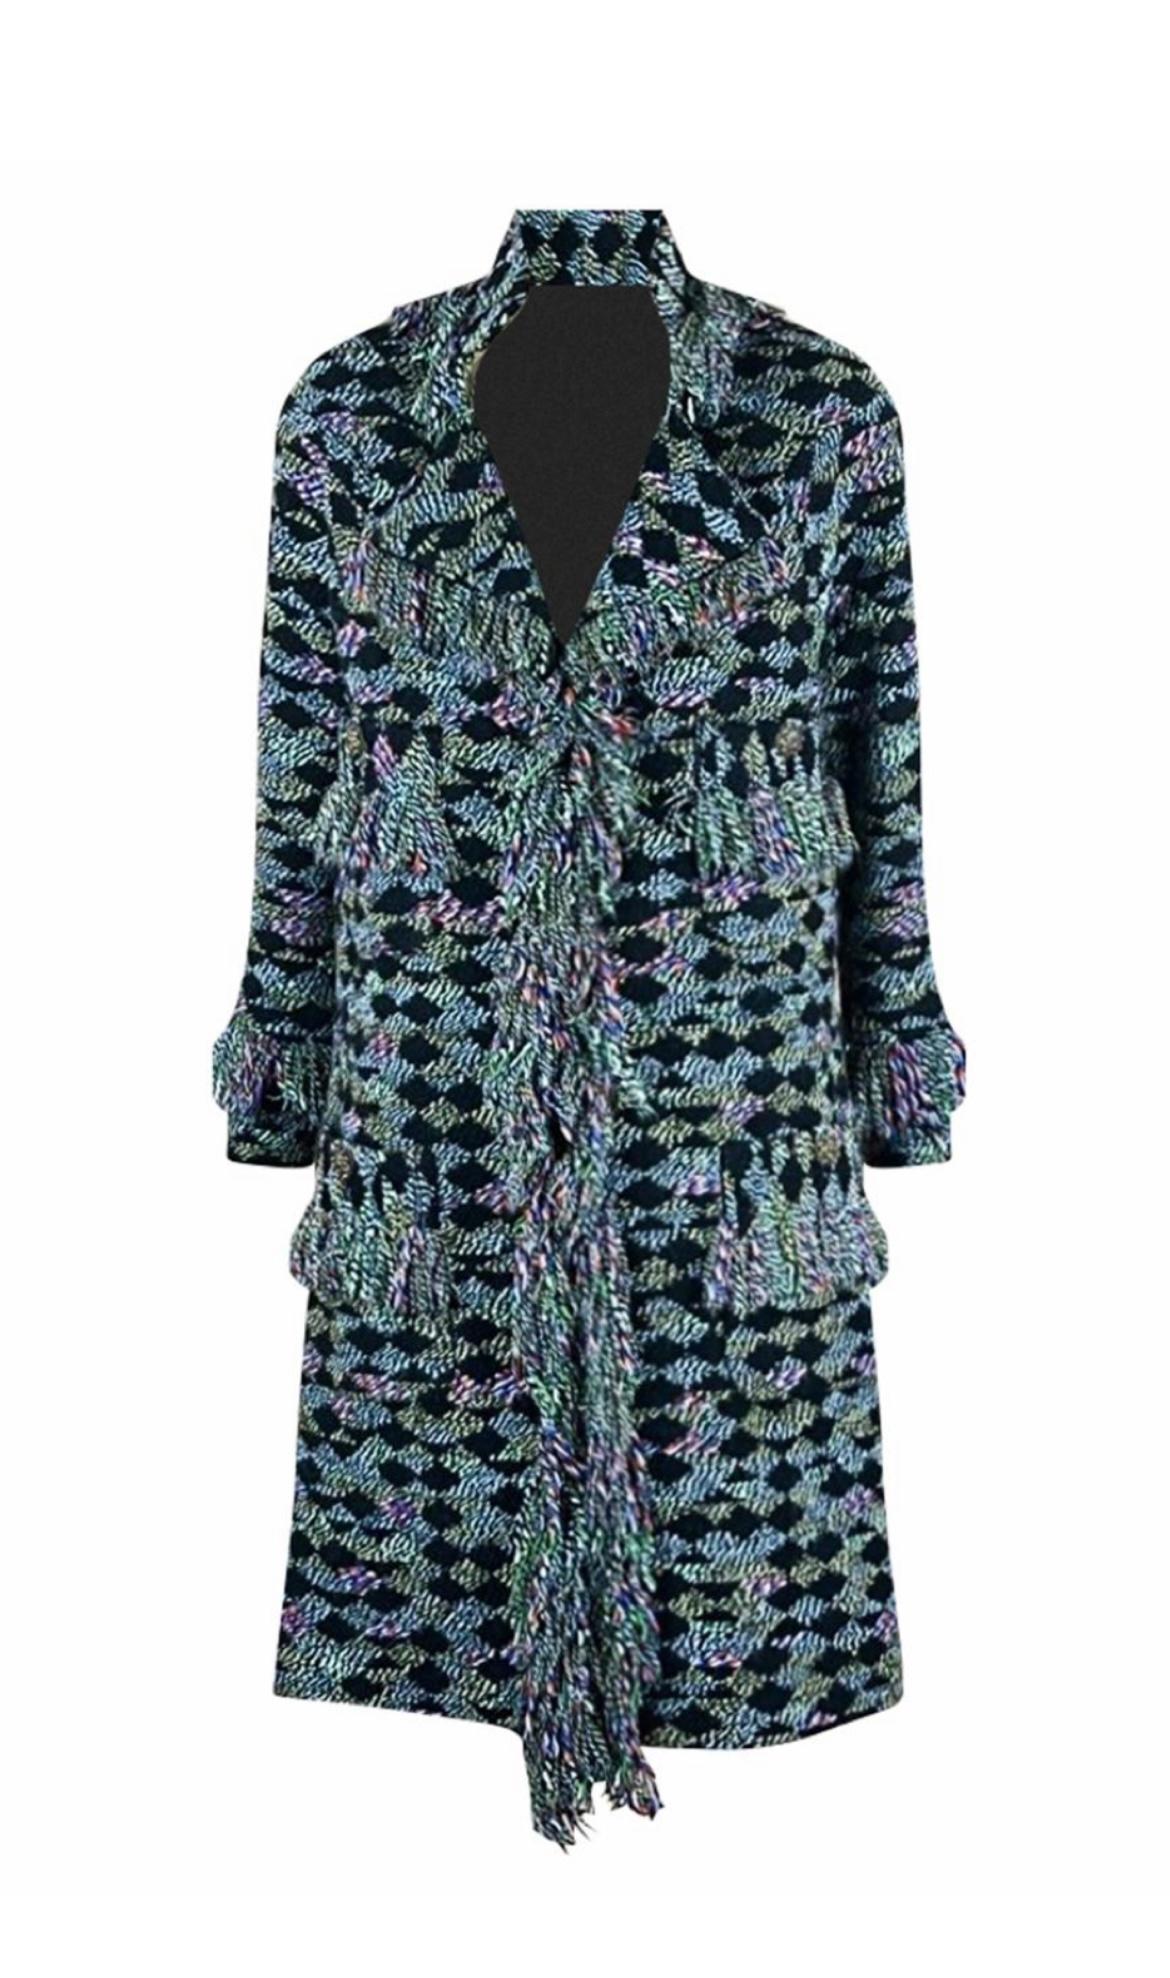 Superbe manteau en tweed de Chanel issu de la collection Runway of Paris/SALZBURG Metiers d'Art, 2015 Pre-Fall.
Prix de détail ca. 9,000$
- en tweed fantaisie avec bordures à franges signature
- Logo CC Boutons en Jewel rehaussés de pierres